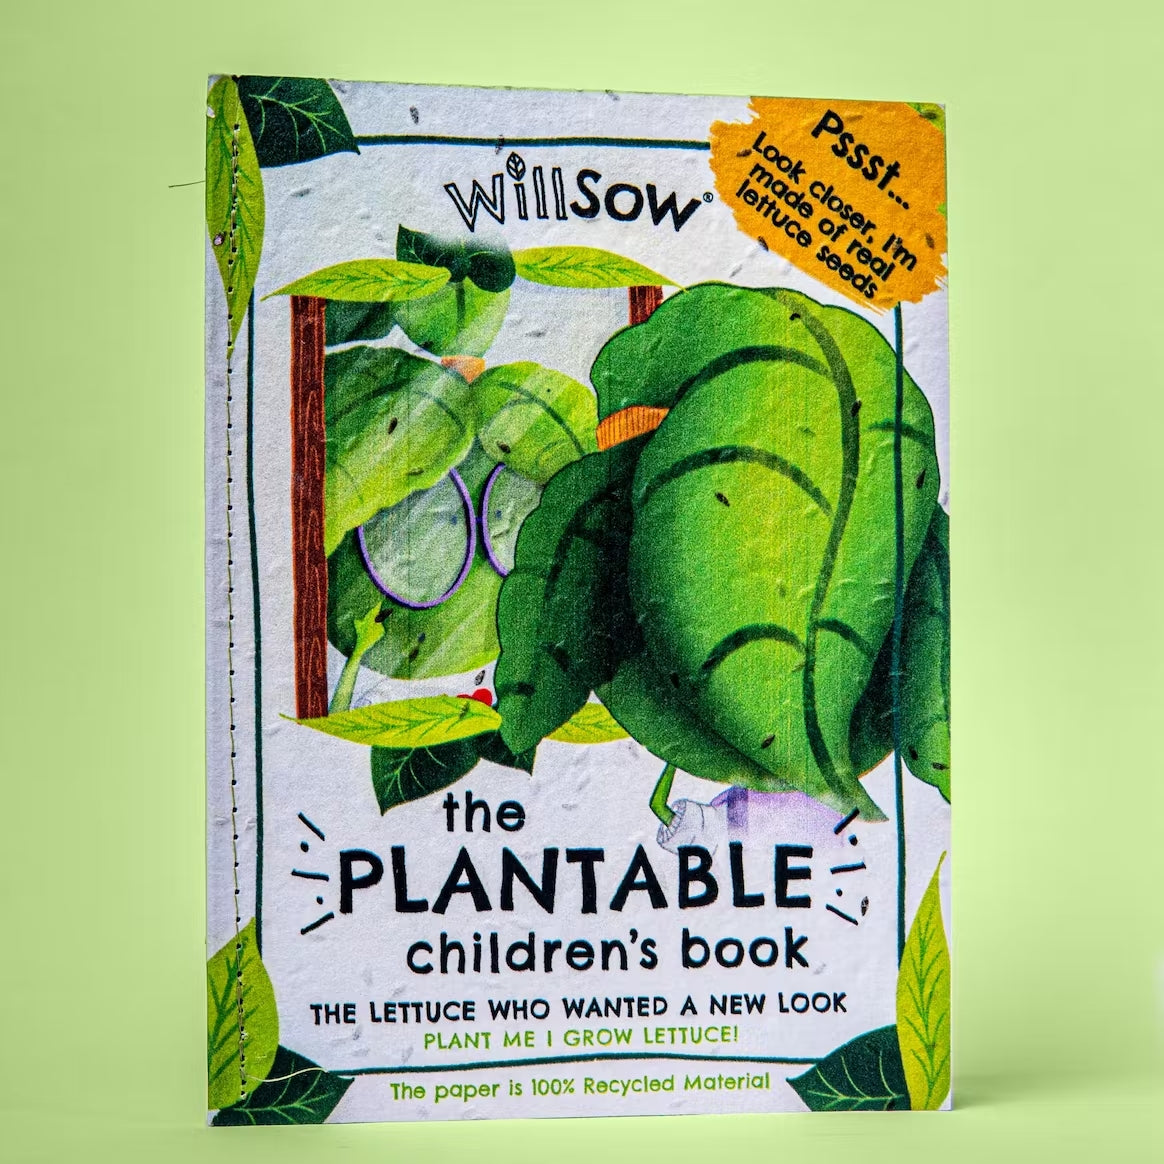 Willsow Plantable Books